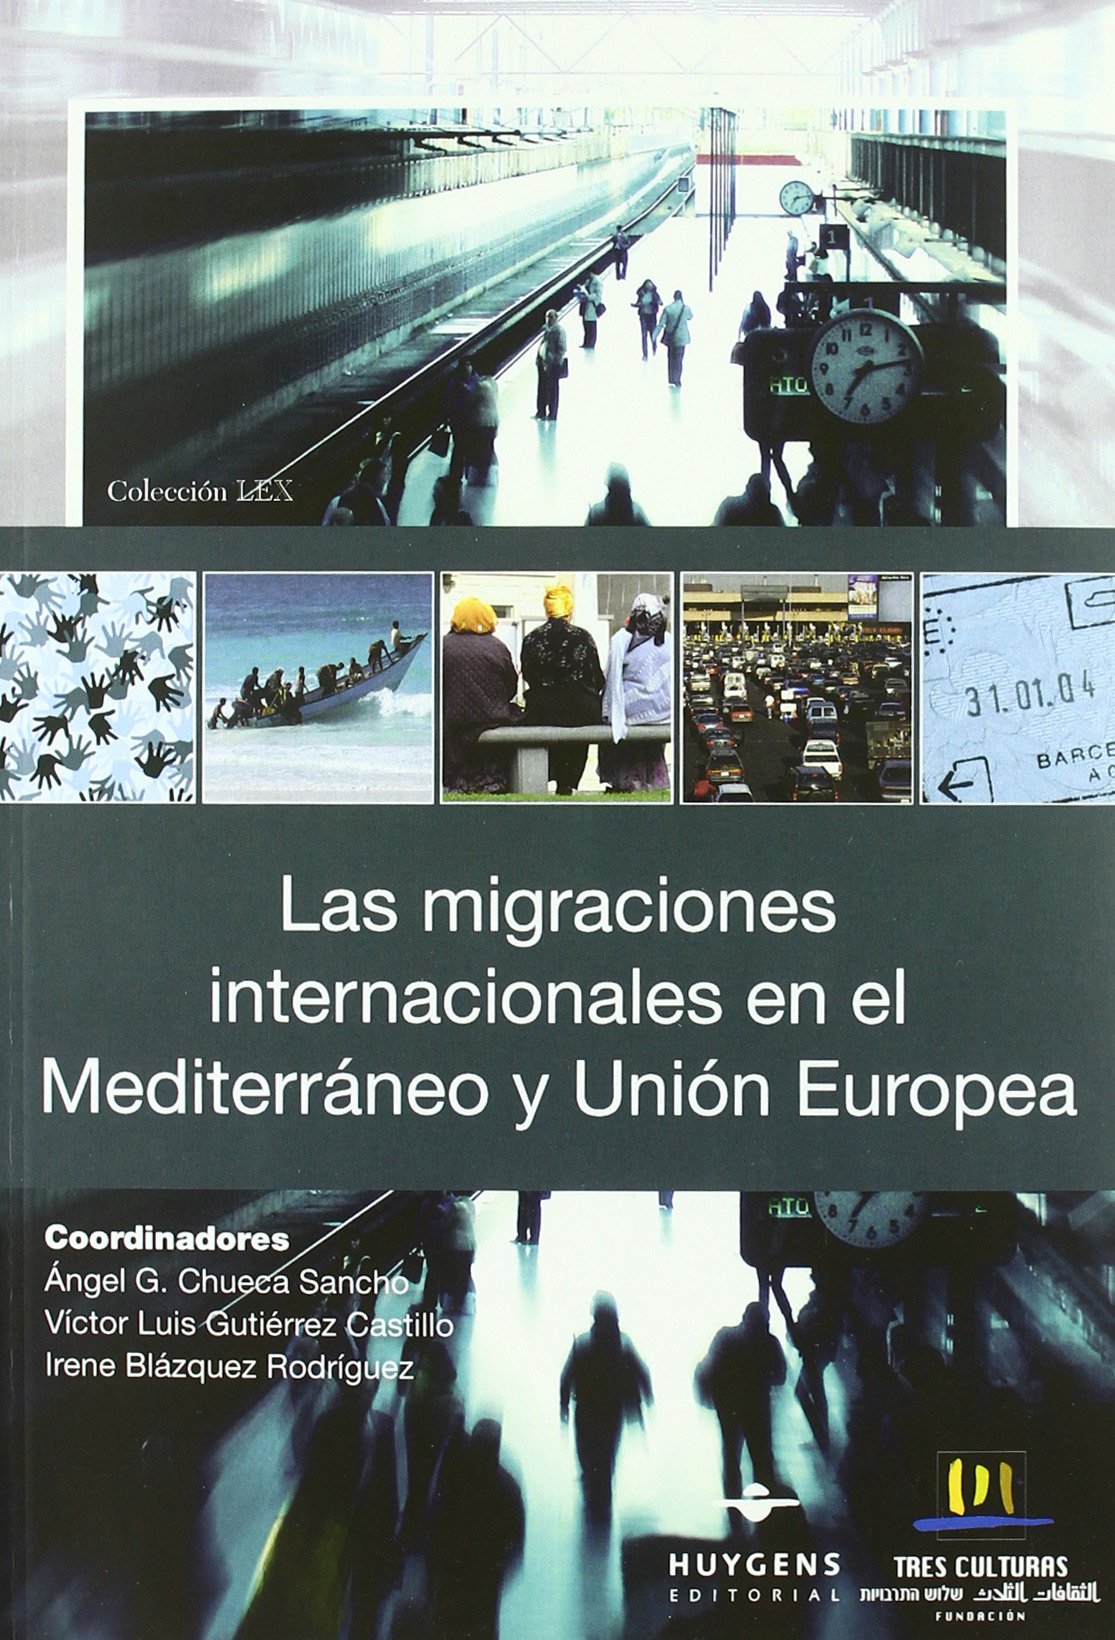 Las migraciones internacionales en el Mediterráneo y la Unión Europea